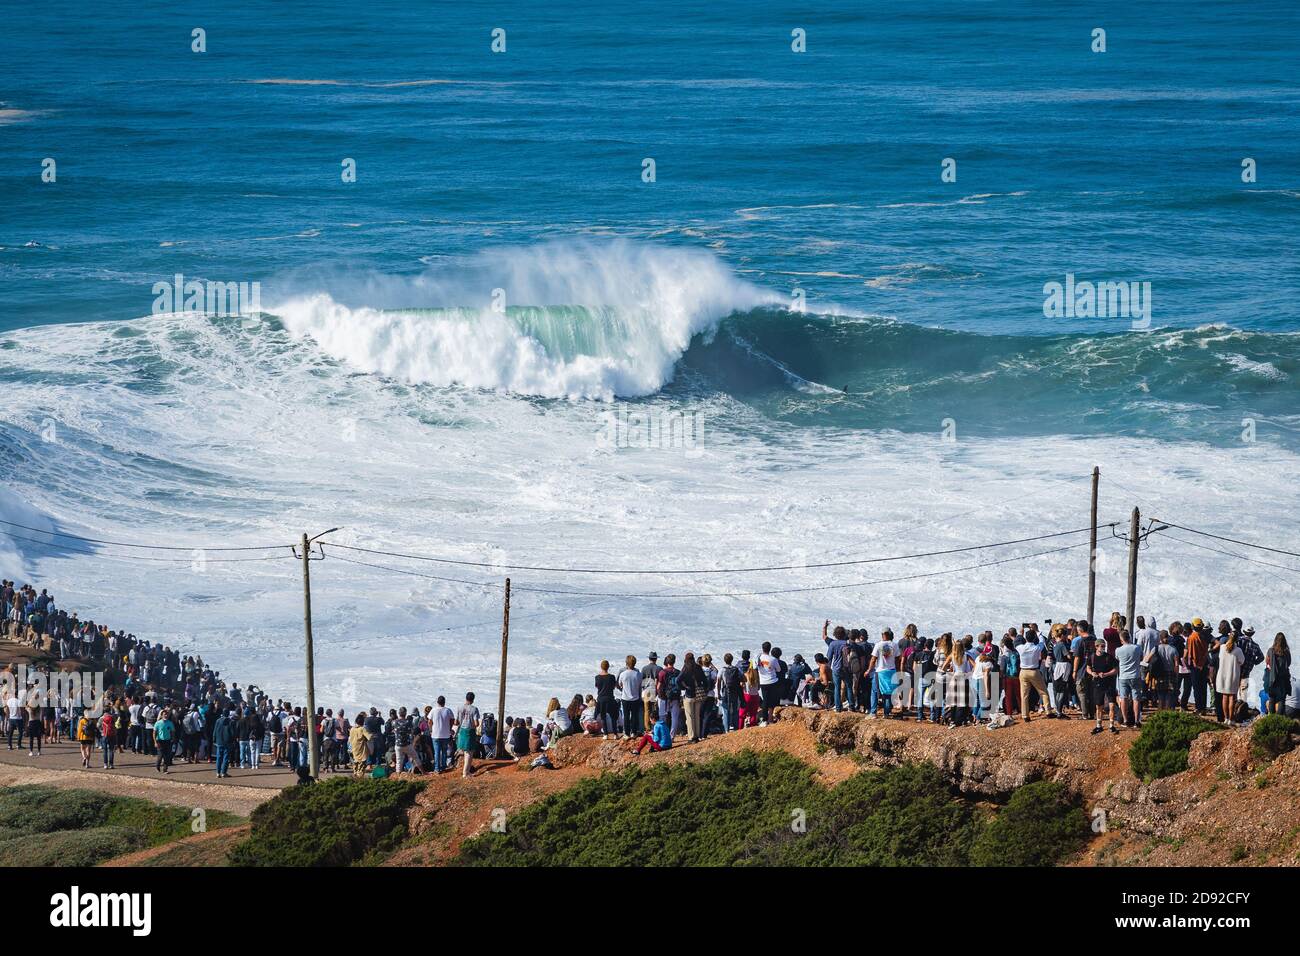 Menschen, die Big Wave Surfer beim Reiten der Riesenwelle am Strand Praia do Norte in Nazare, Portugal, beobachten. Stockfoto